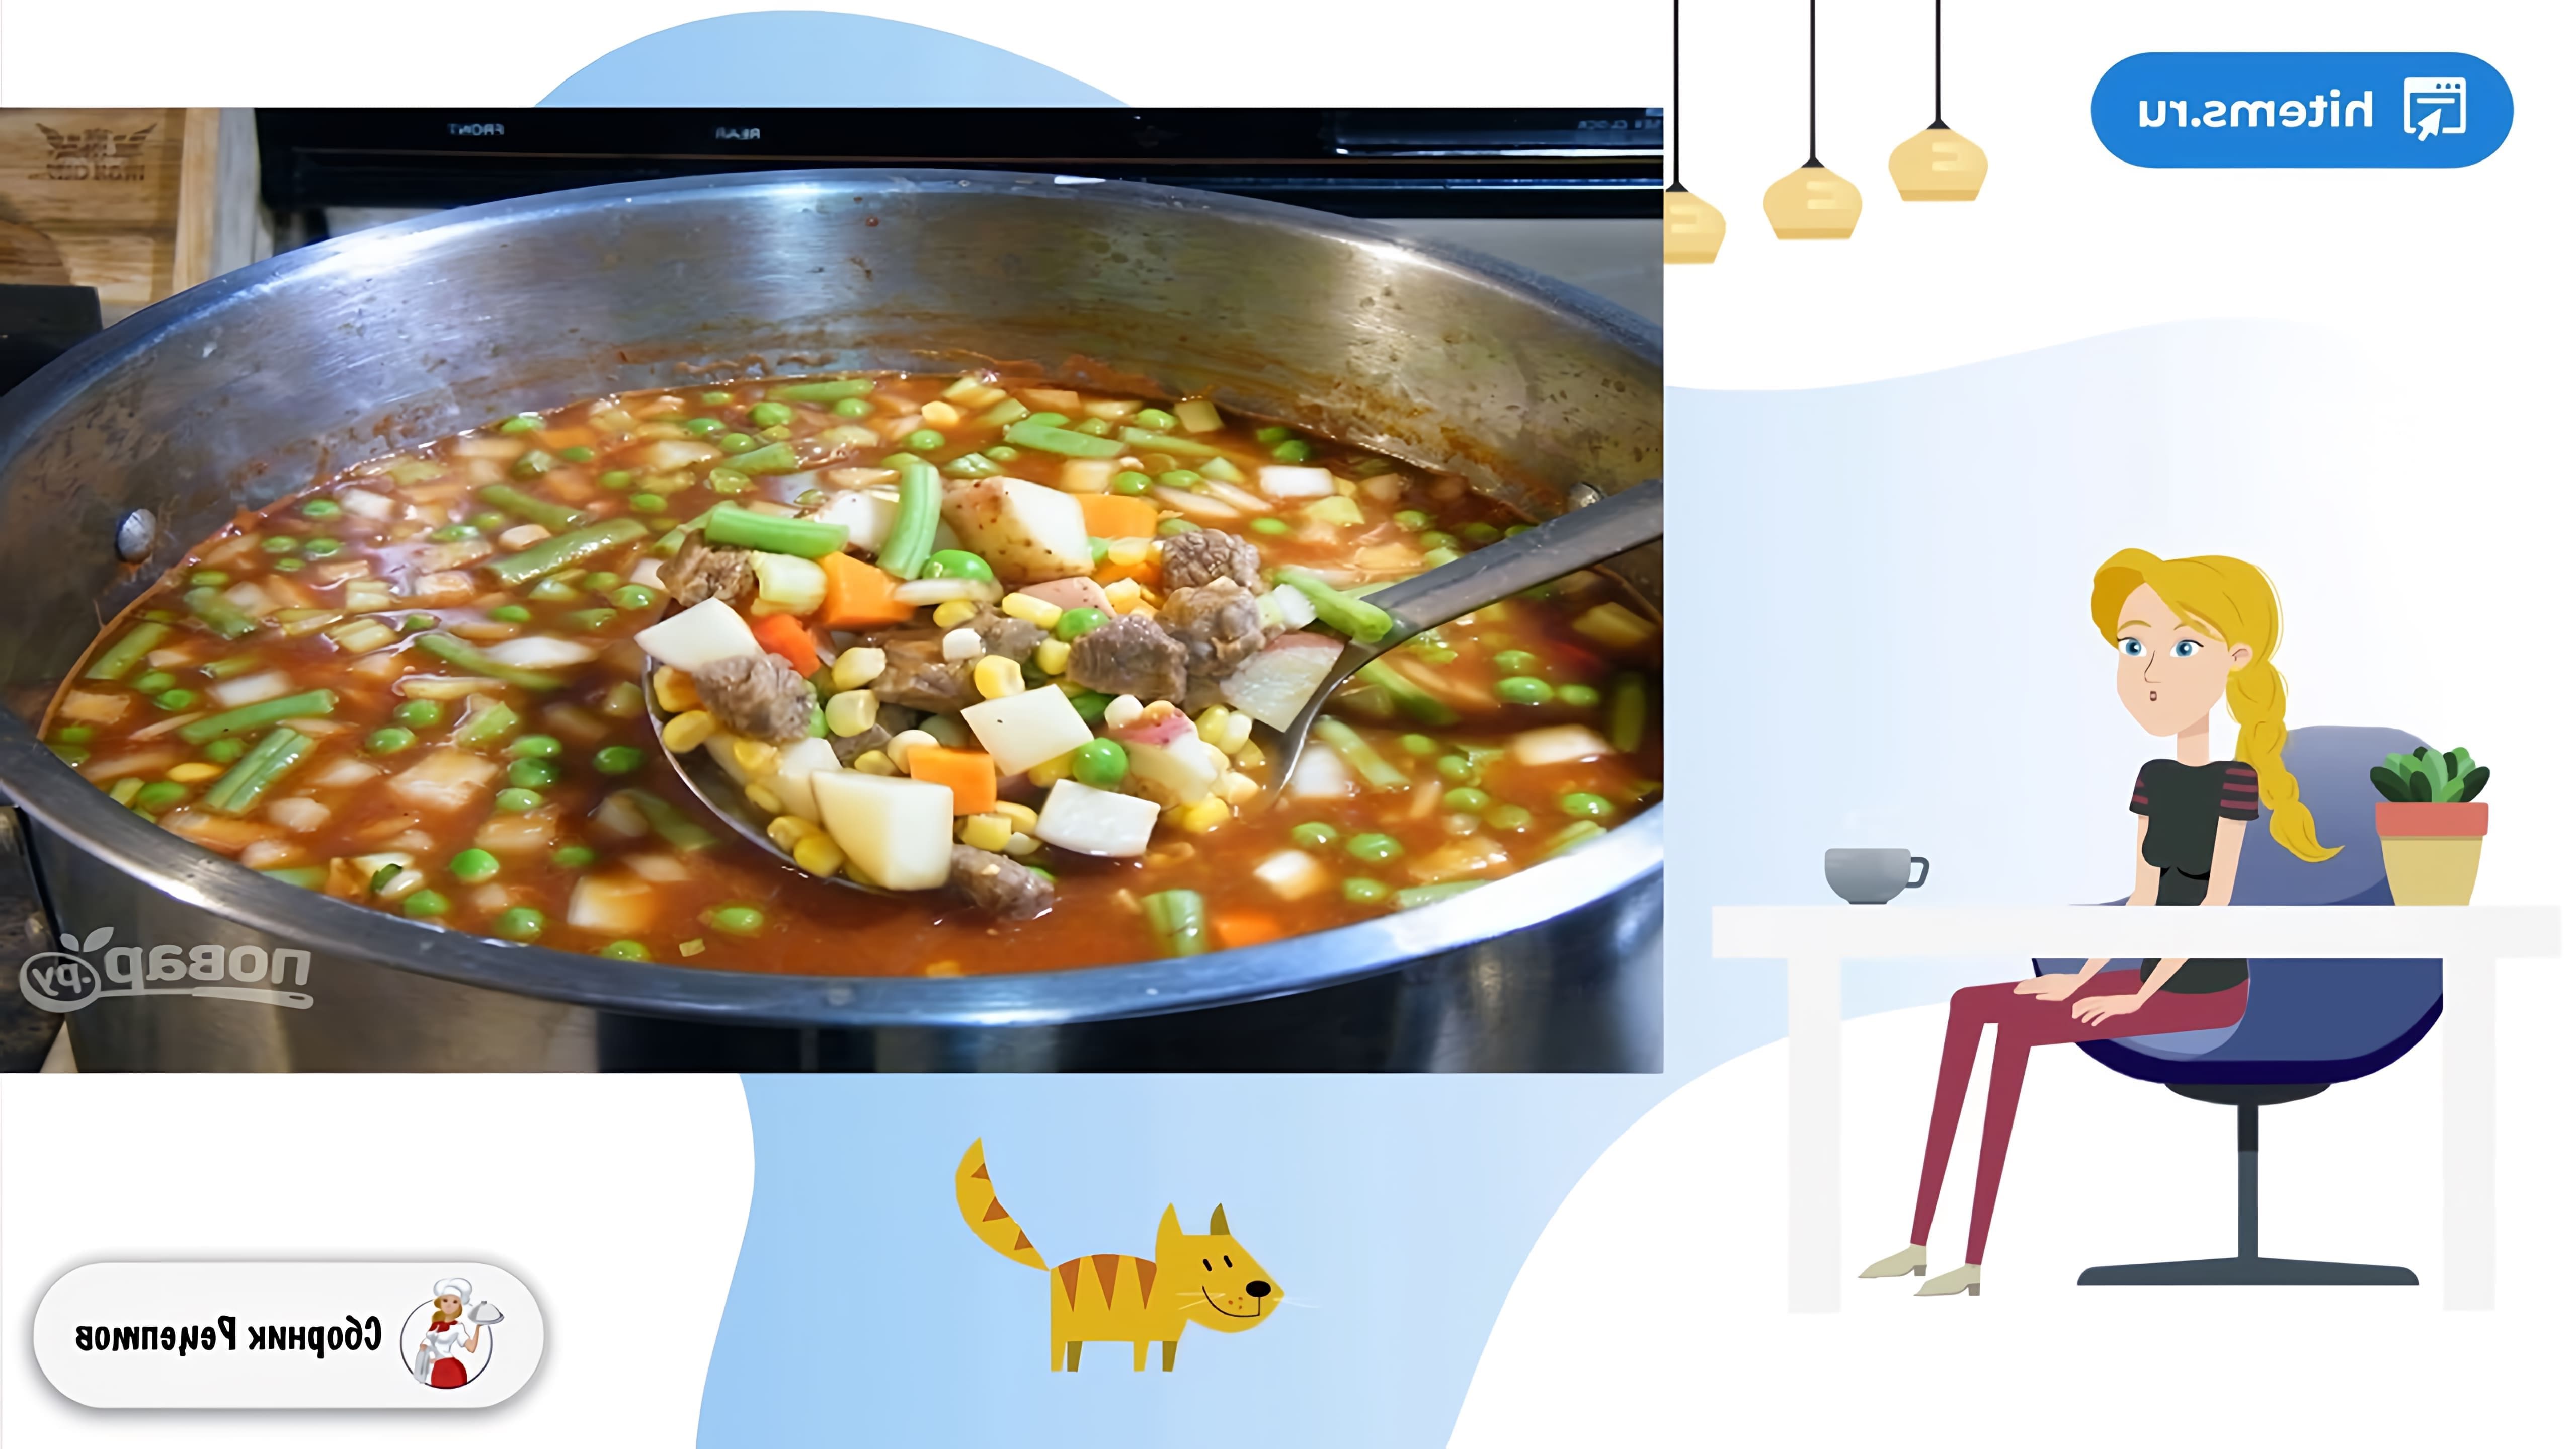 В этом видео демонстрируется процесс приготовления мясного супа с овощами в домашних условиях